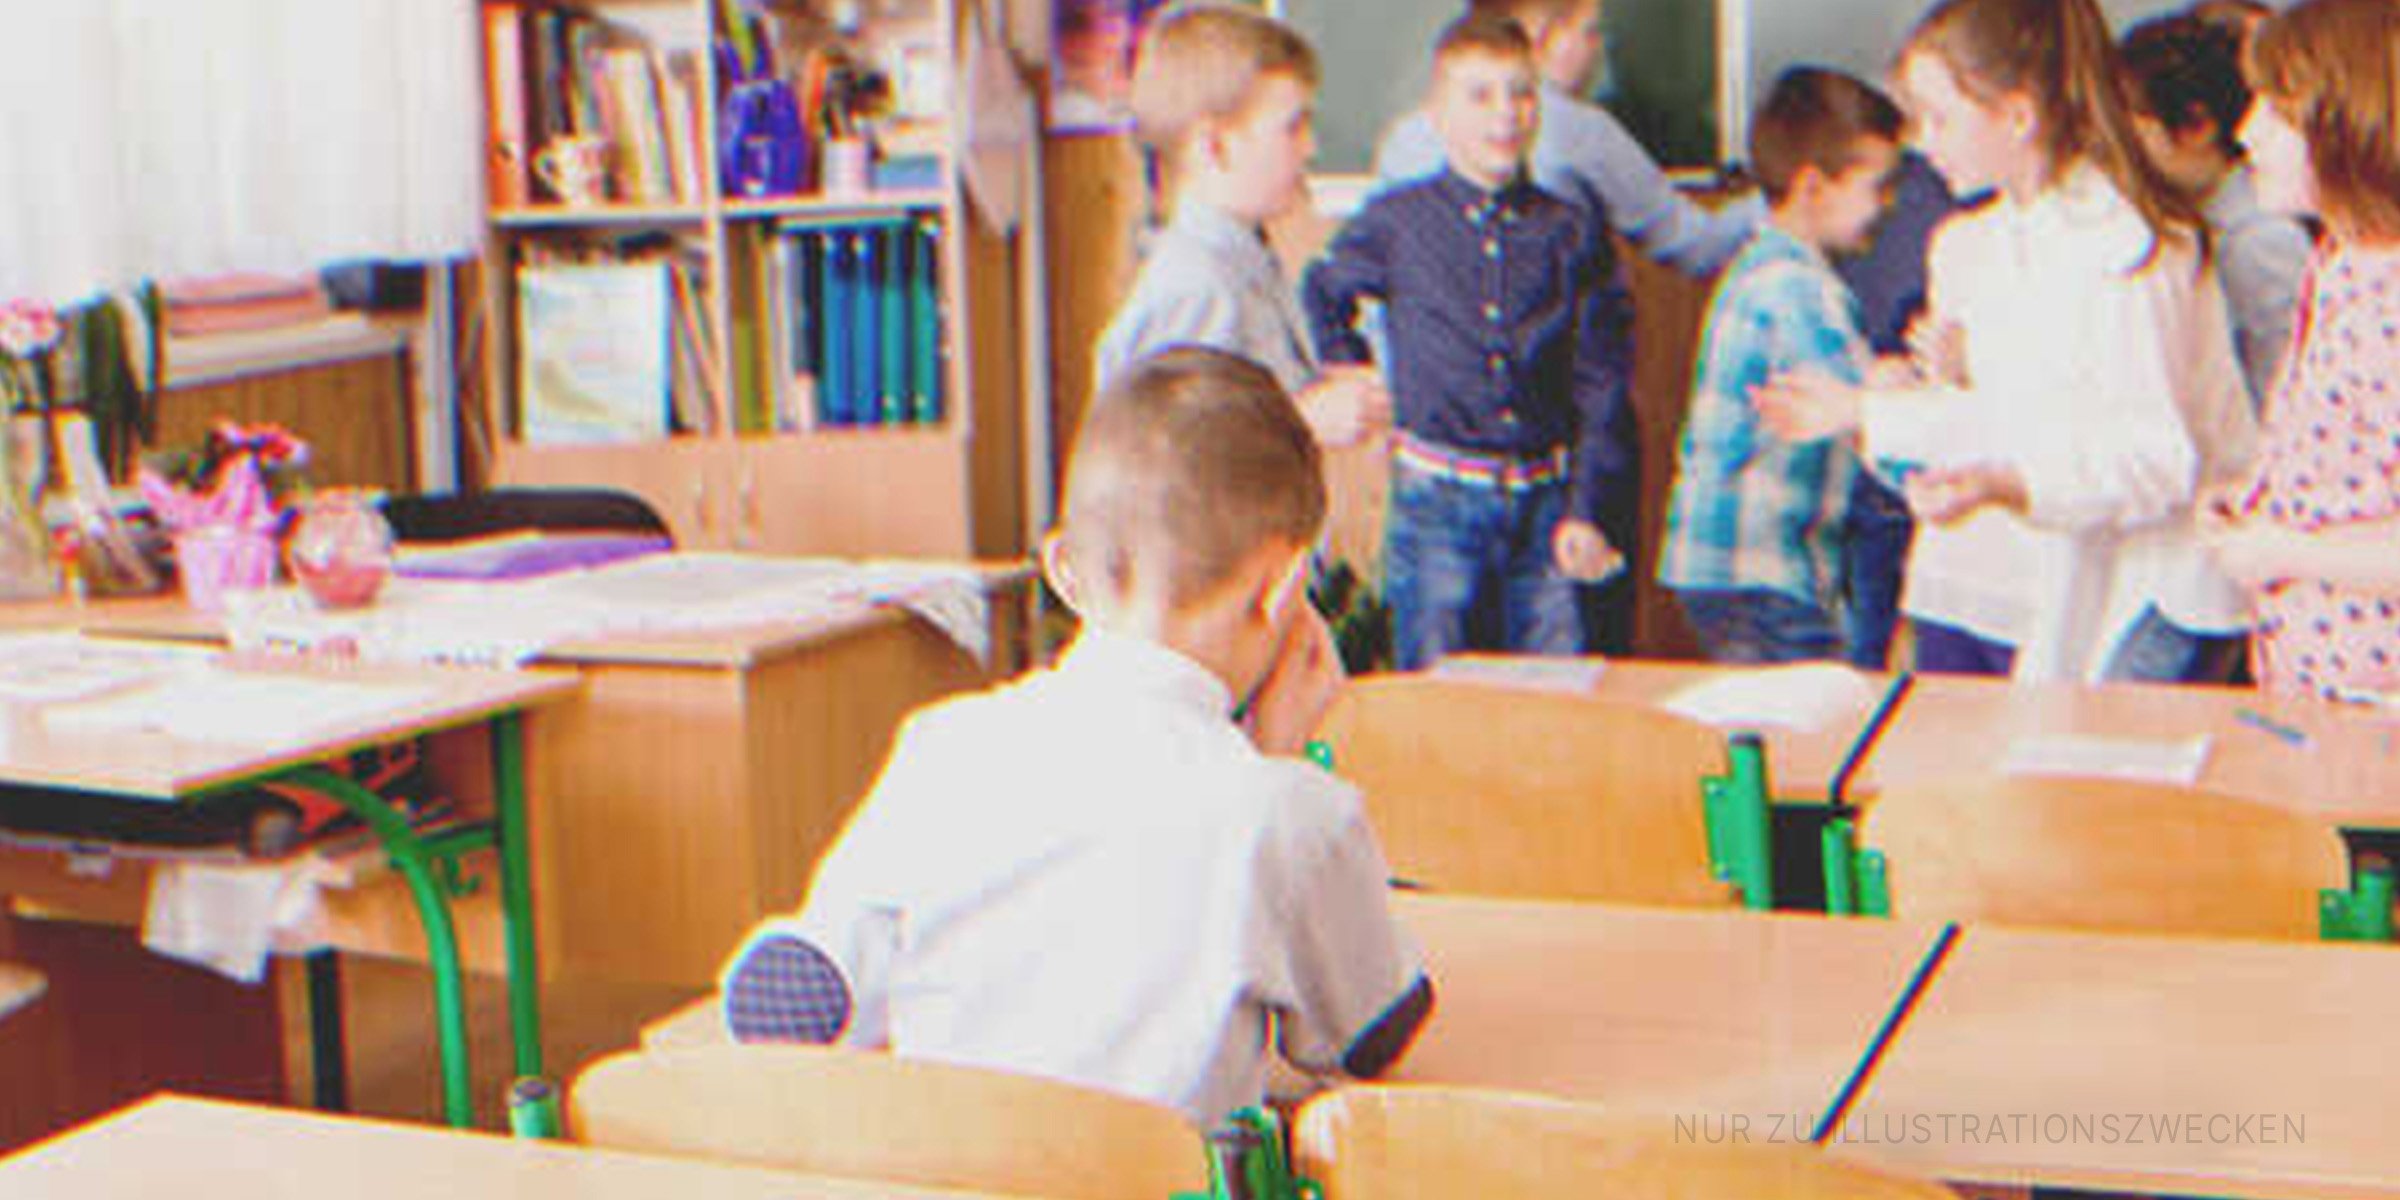 Trauriger Junge in einem Klassenzimmer | Quelle: Shutterstock